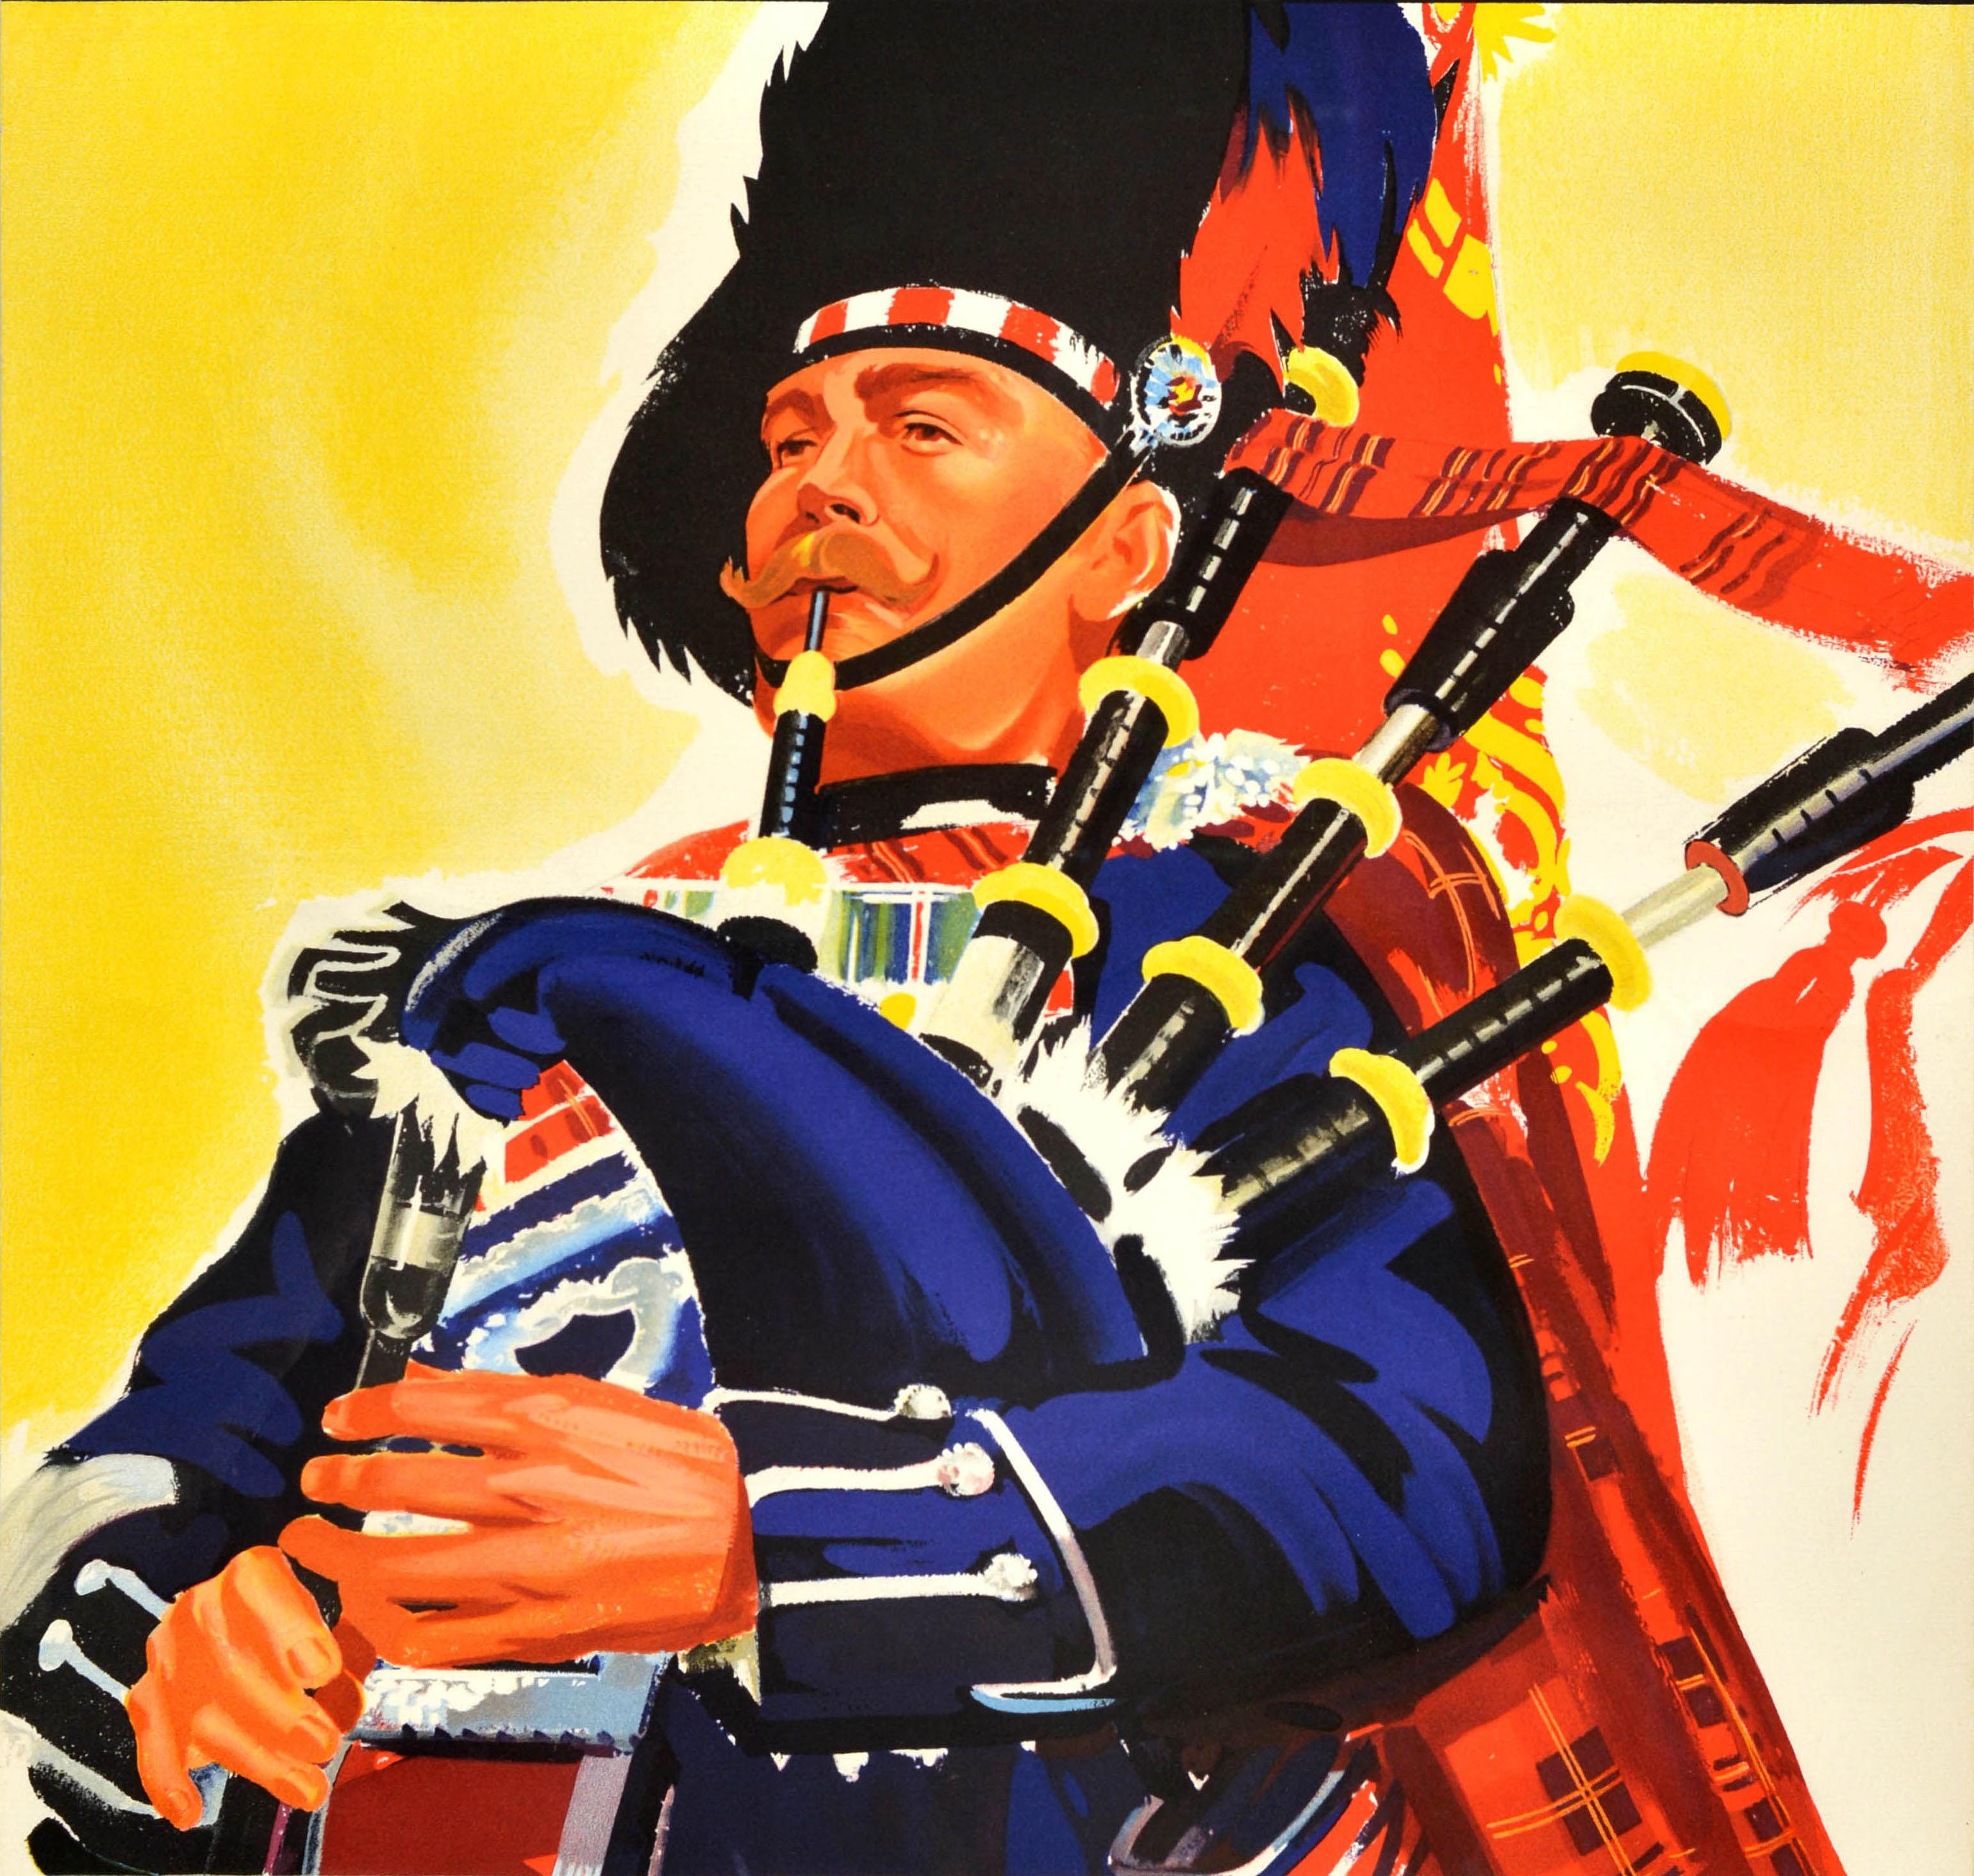 Affiche publicitaire originale de voyage en train - See Britain by Train - comportant une illustration colorée d'un joueur de cornemuse écossais en uniforme jouant de la musique sur un fond jaune, le titre en rouge et blanc sur une bordure noire